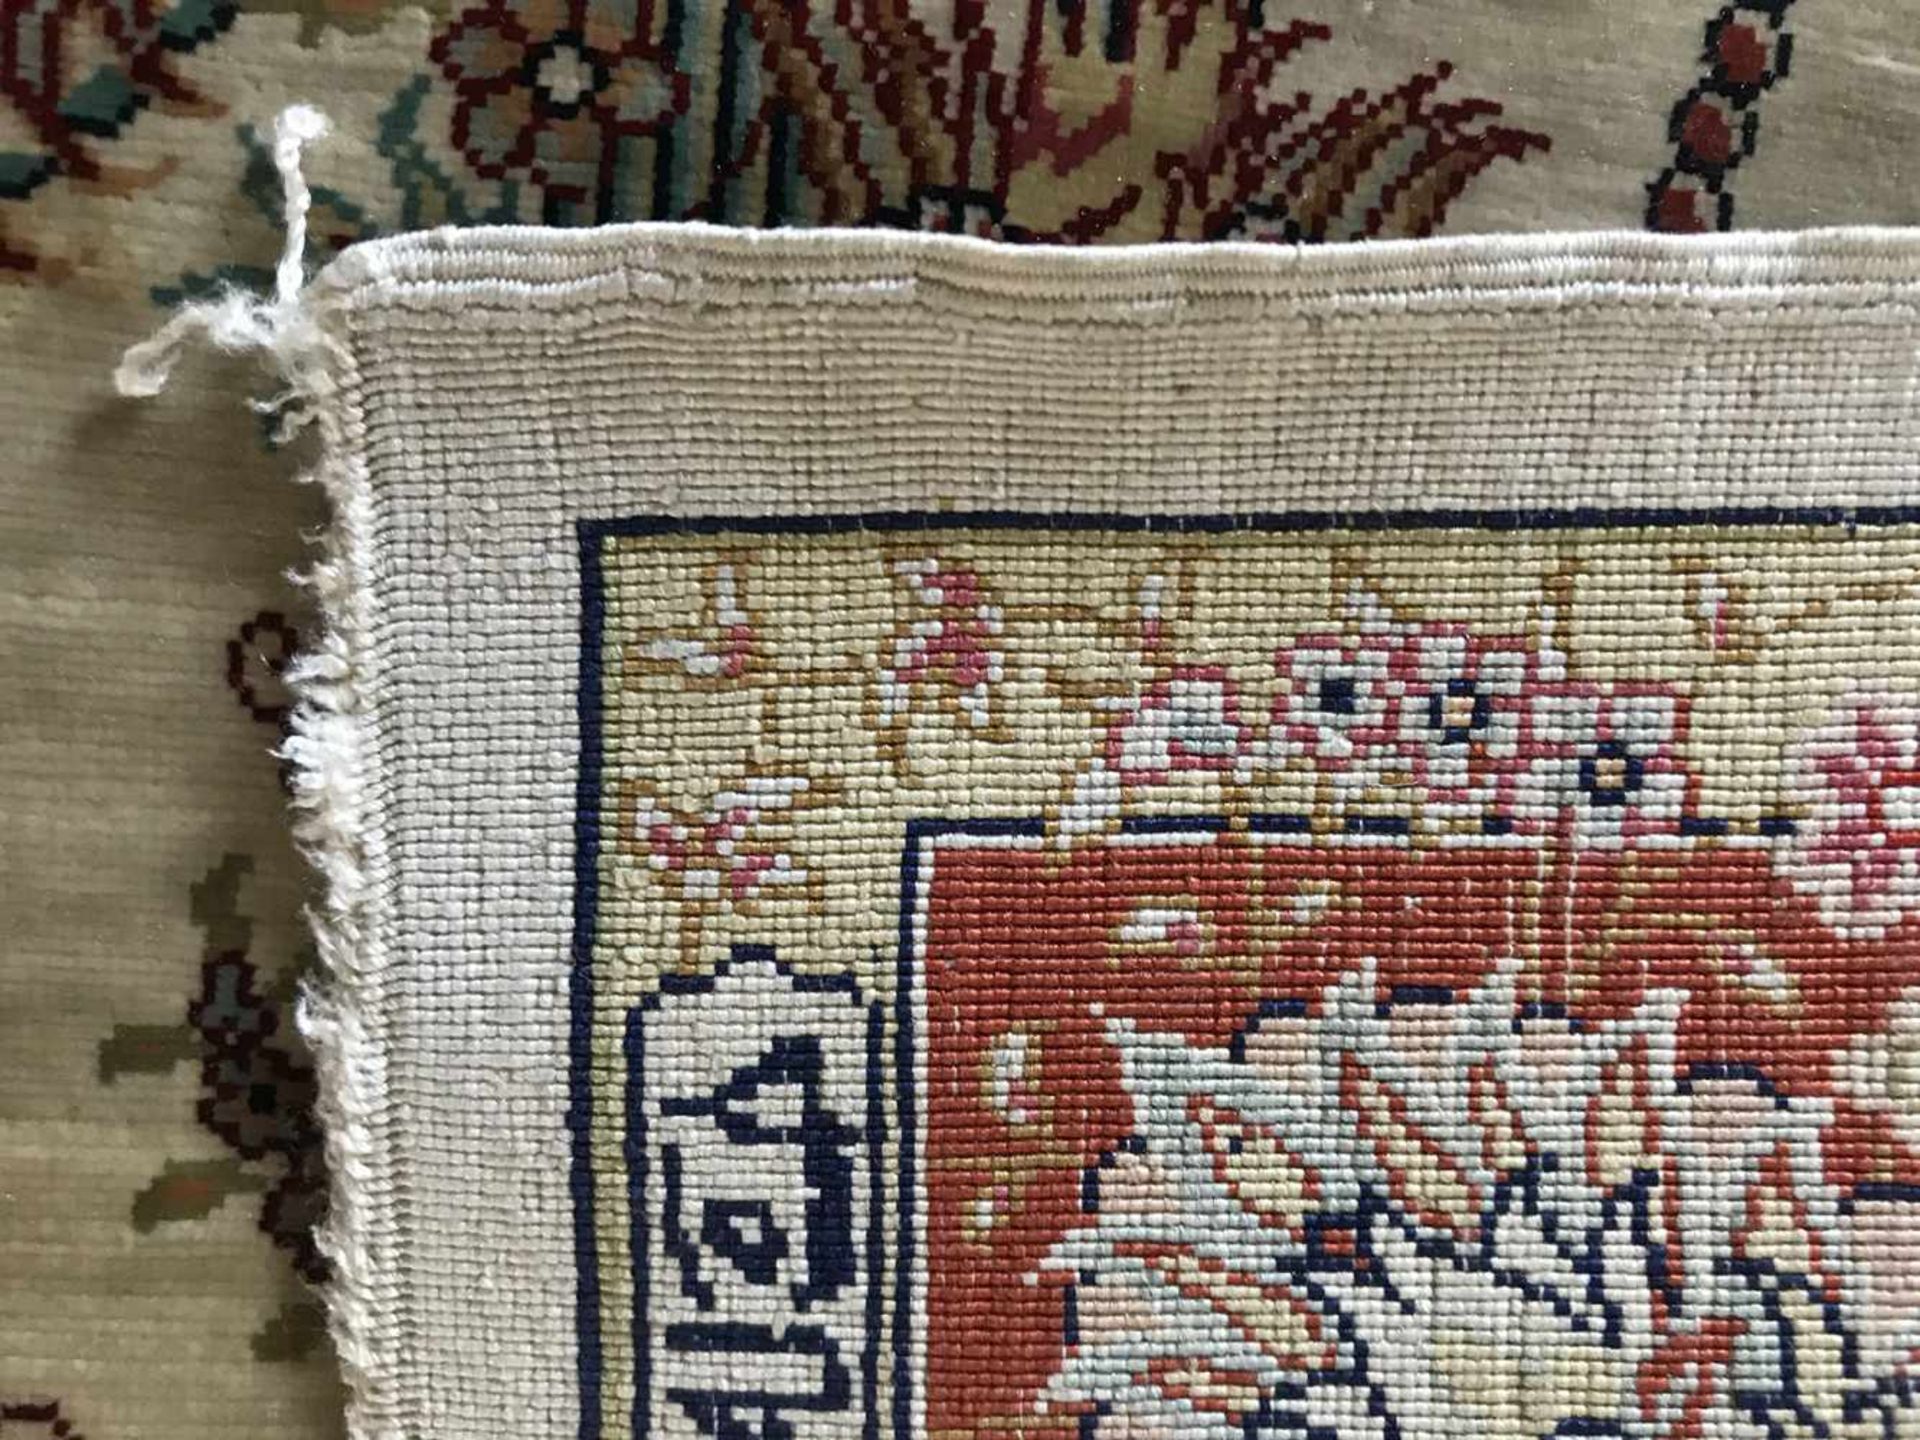 Türkischer Seidenteppich, feinste Knüpfung, signiert, Altersspuren, 66 x 46 cm - Bild 2 aus 3